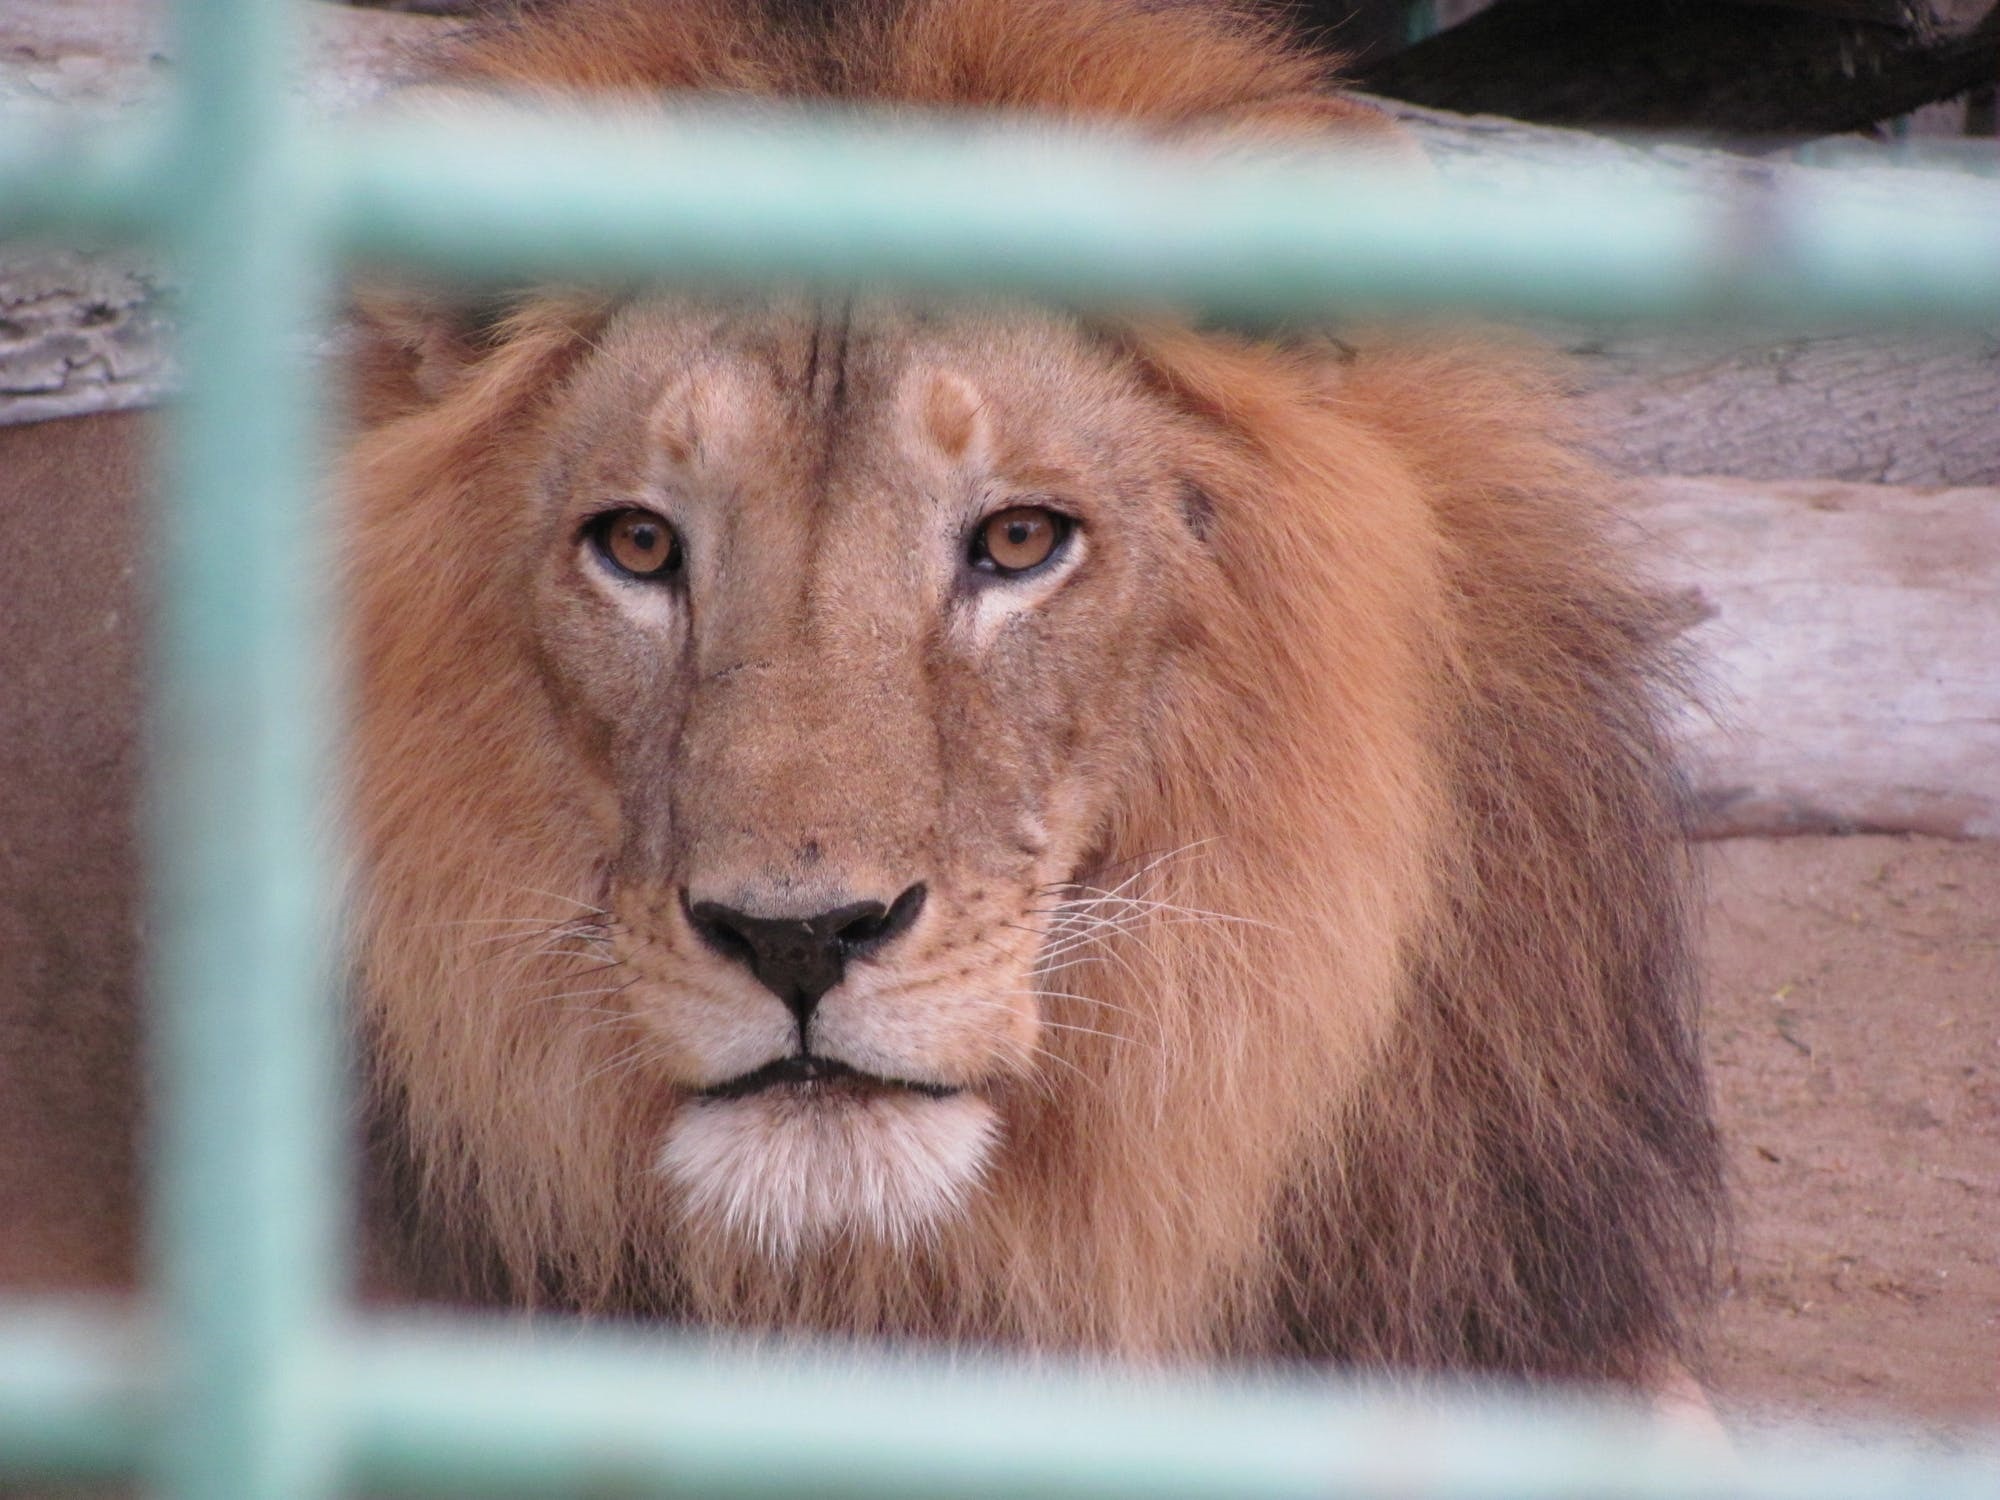 Giamaica: il guardiano di uno zoo infila mano nella gabbia del leone, ma gli mozza un dito [VIDEO]